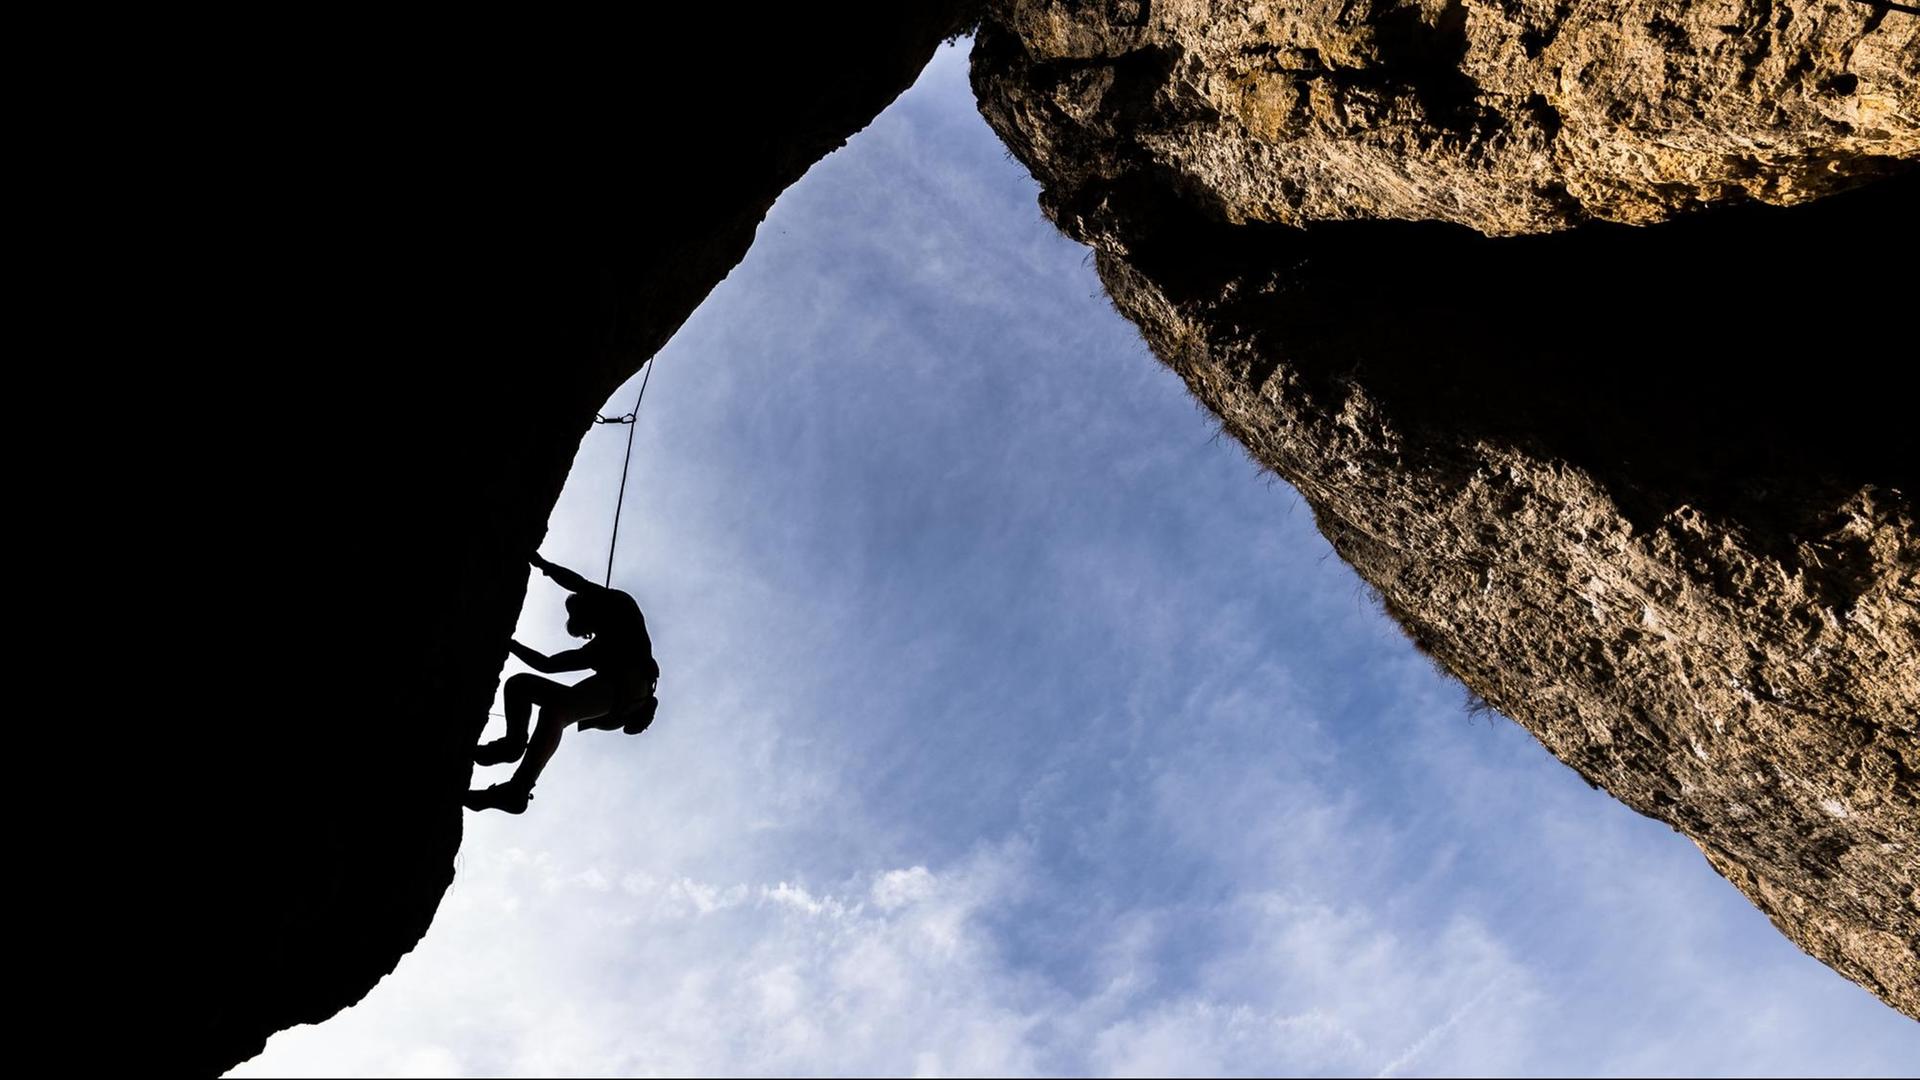 Sophie aus Erlangen klettert am 12.04.2015 bei Loch (Bayern) eine Felswand hinauf. Die Fränkische Schweiz ist ein wahrhaftes Kletter-Mekka. Die milden Temperaturen laden zu sportlichen Tagen ein. Foto: Nicolas Armer/dpa | Verwendung weltweit